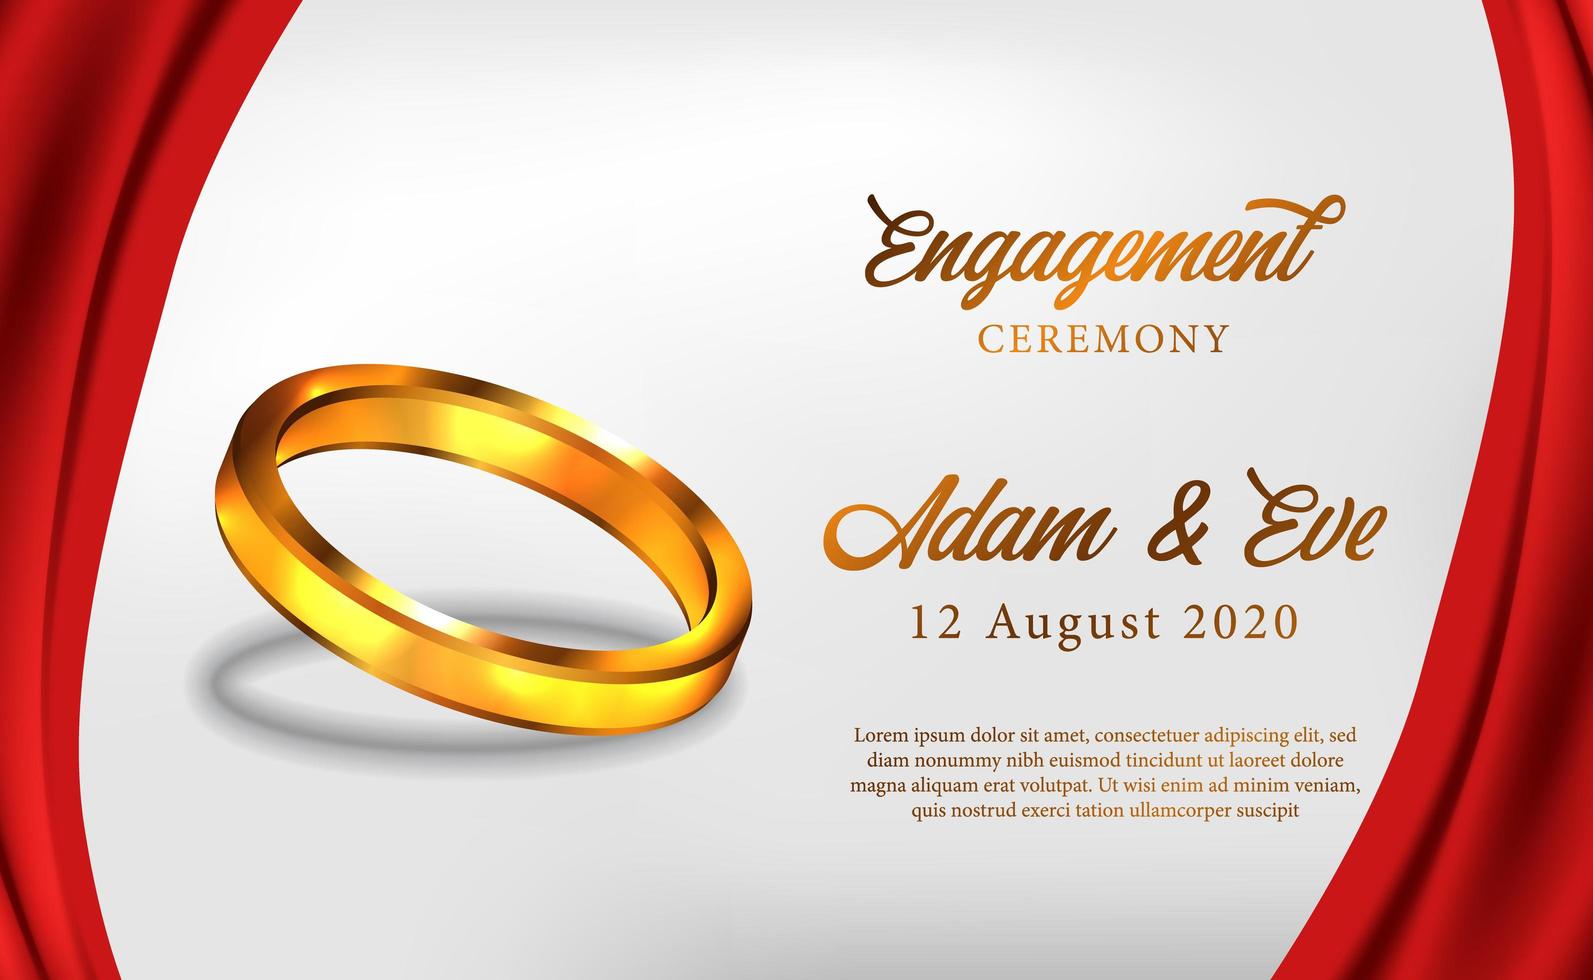 La cerimonia di fidanzamento con anello d'oro 3d propone un matrimonio romantico vettore